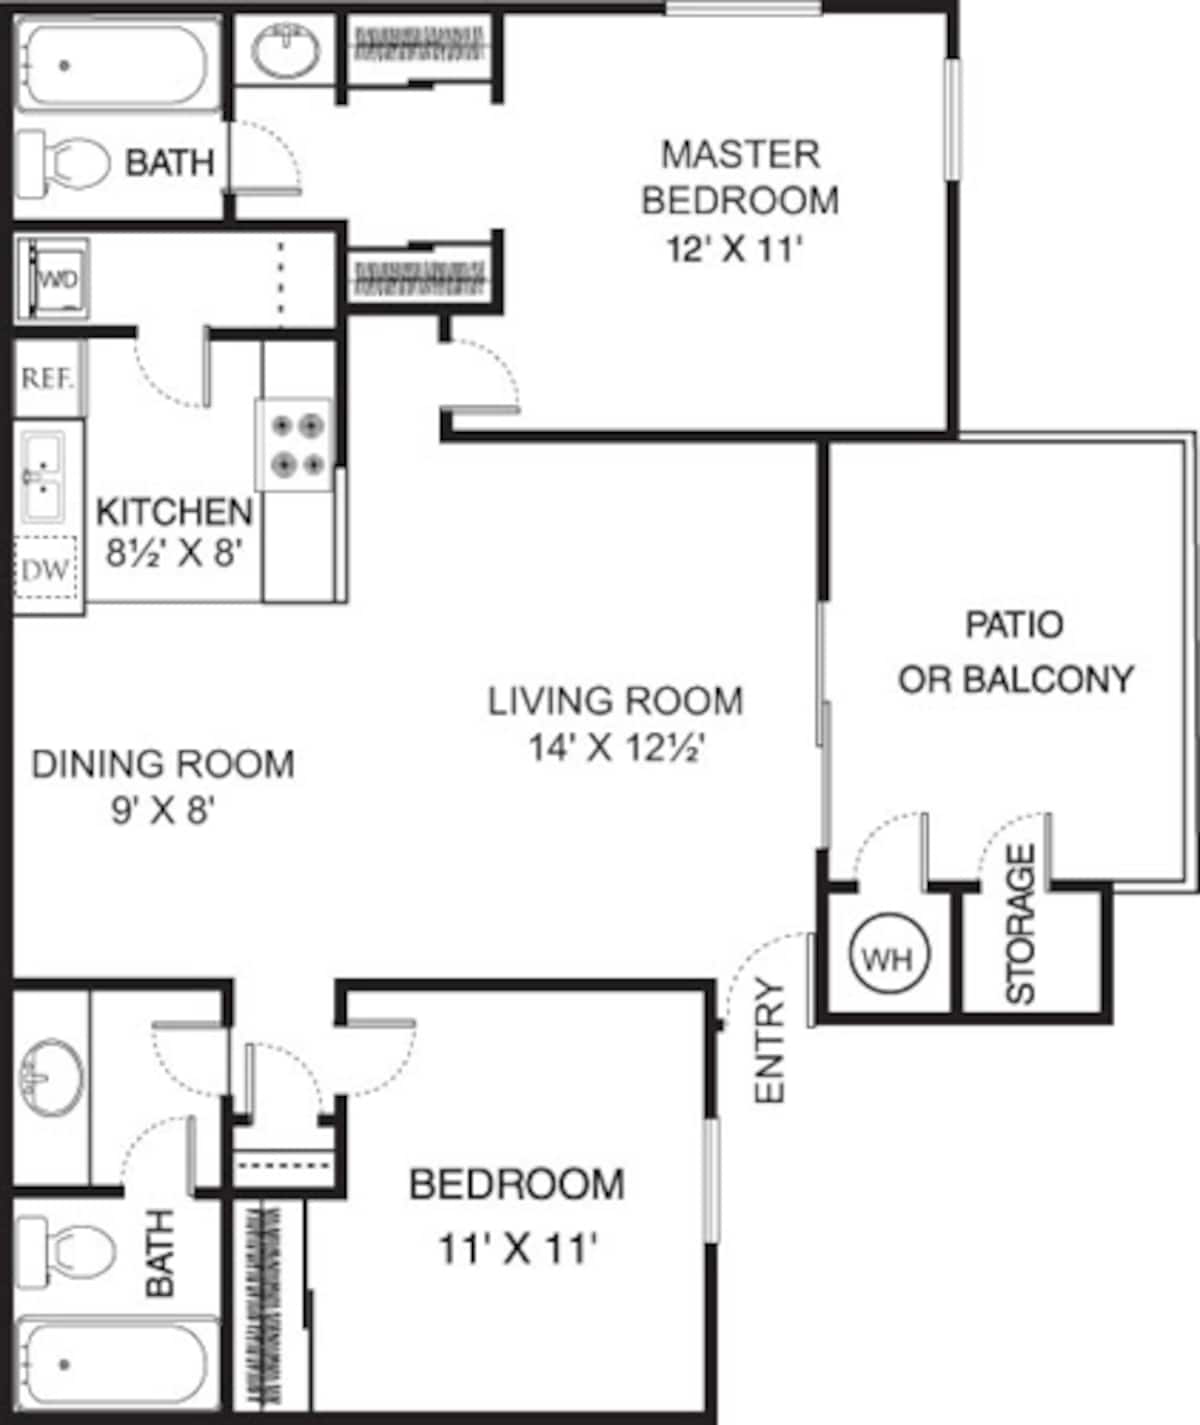 Floorplan diagram for Olive, showing 2 bedroom